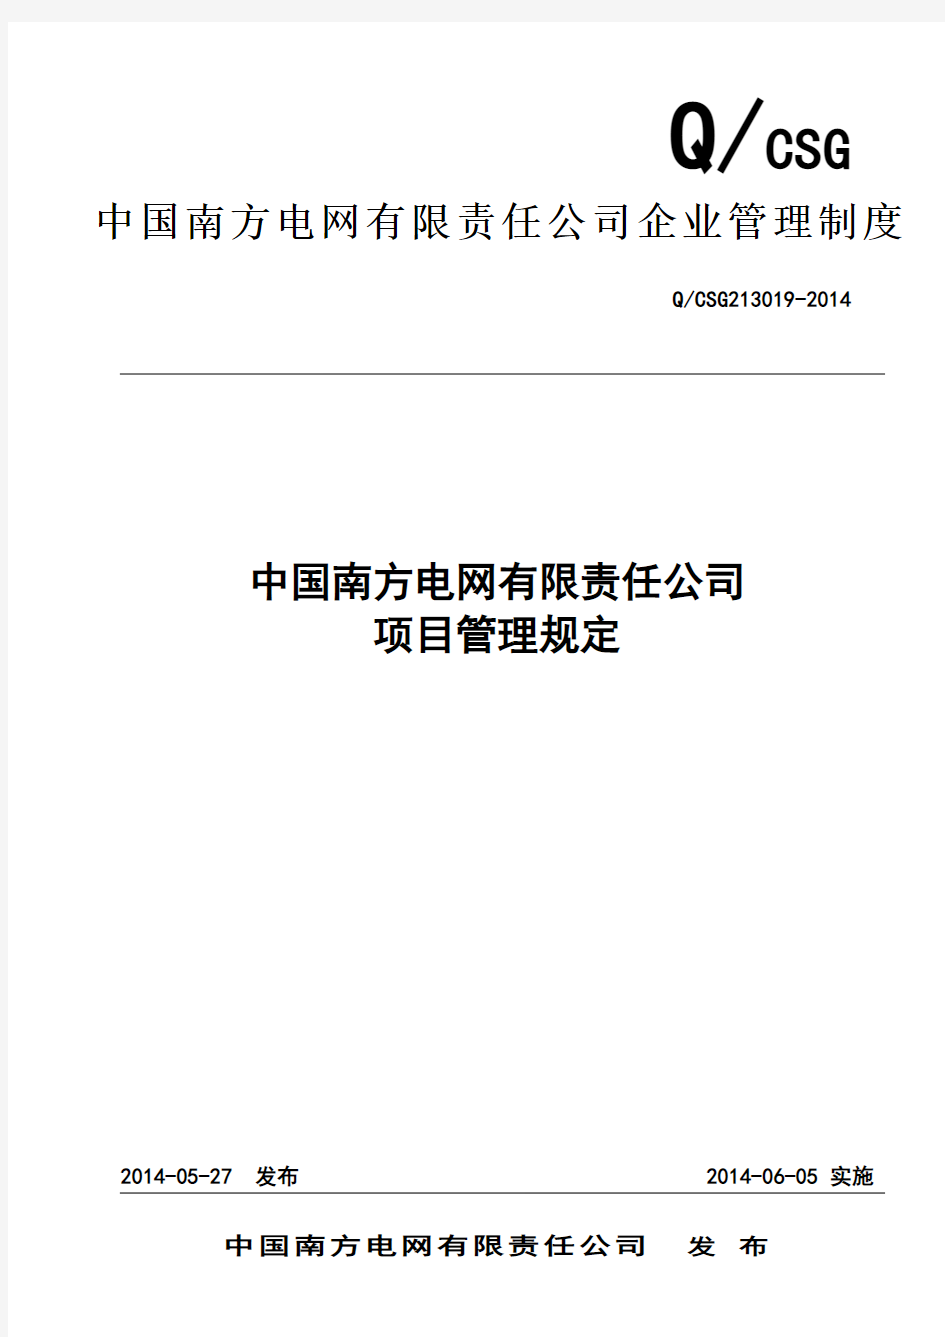 NW-GC-88中国南方电网有限责任公司项目管理规定教学文案